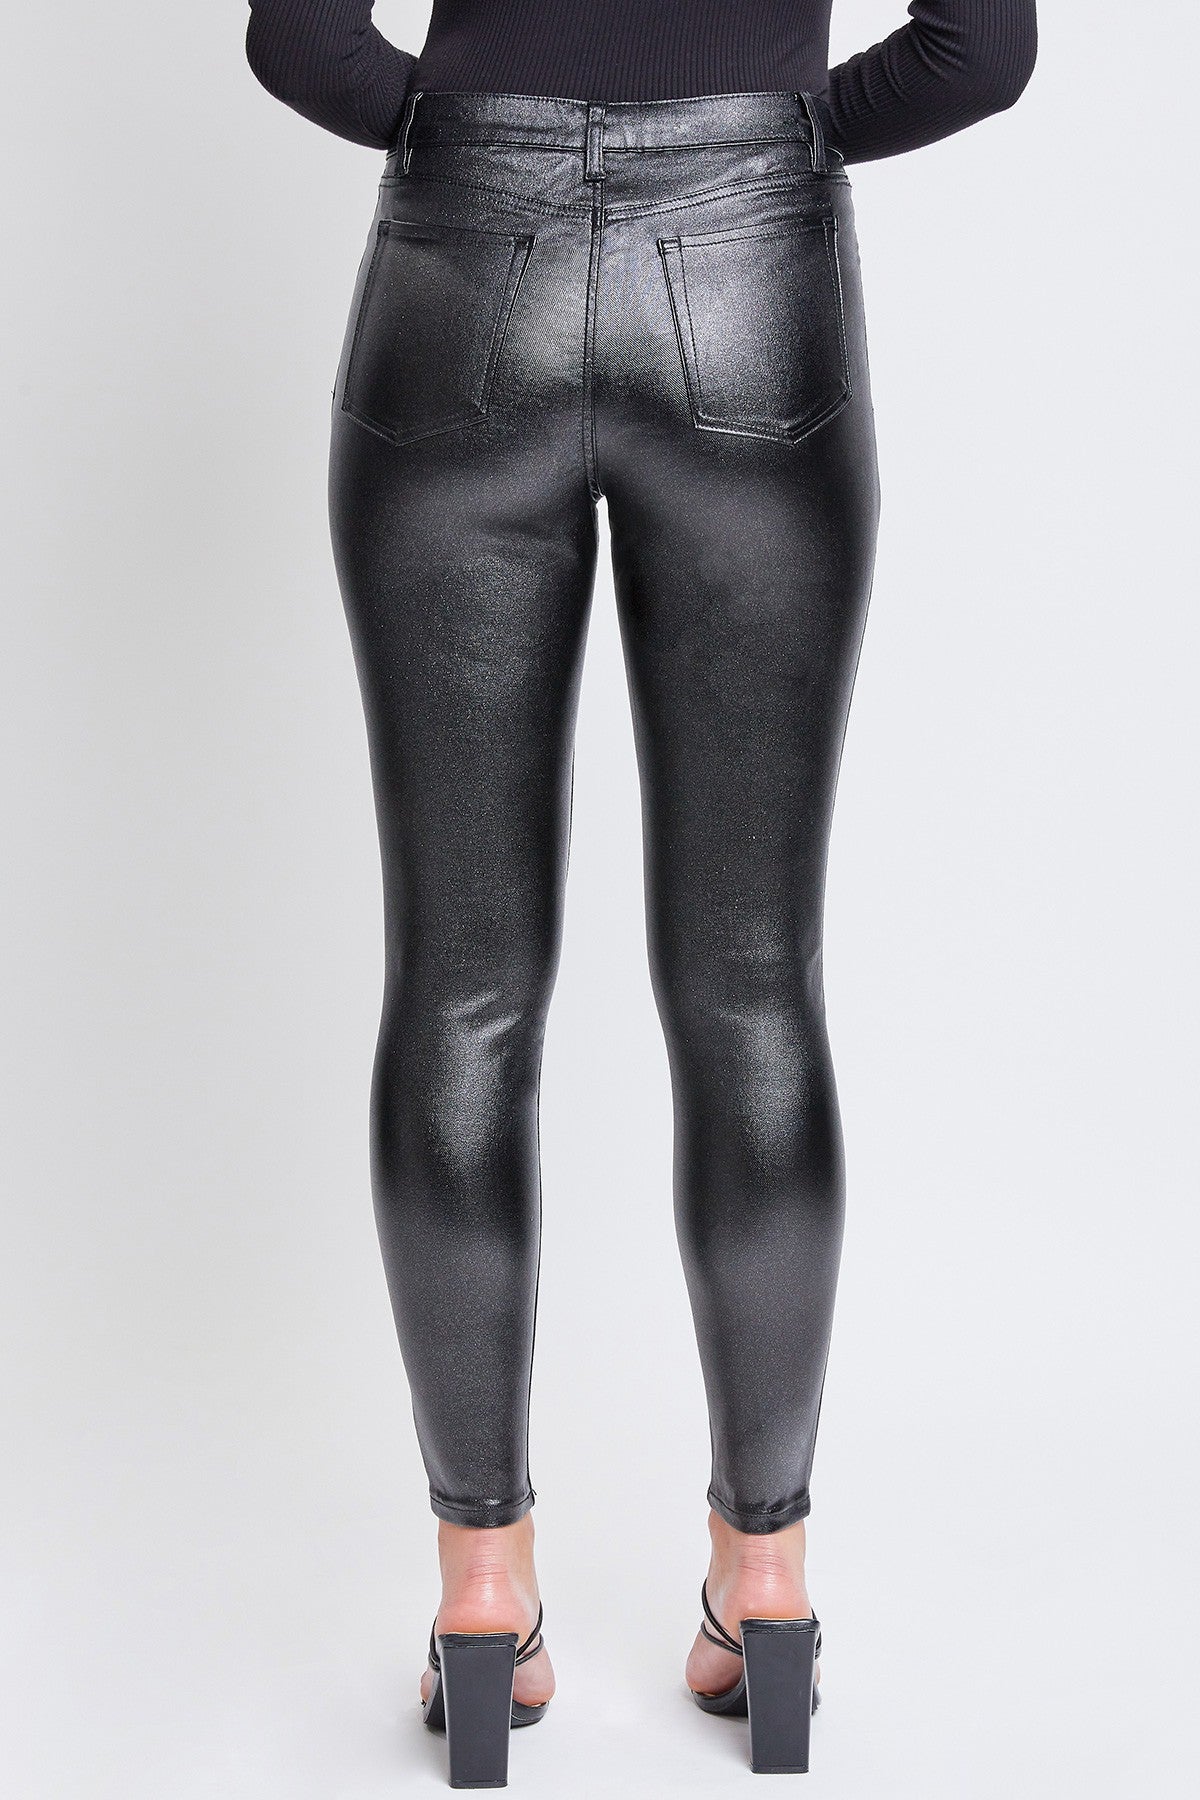 Pantalon ultra stretch chatoyant (noir)